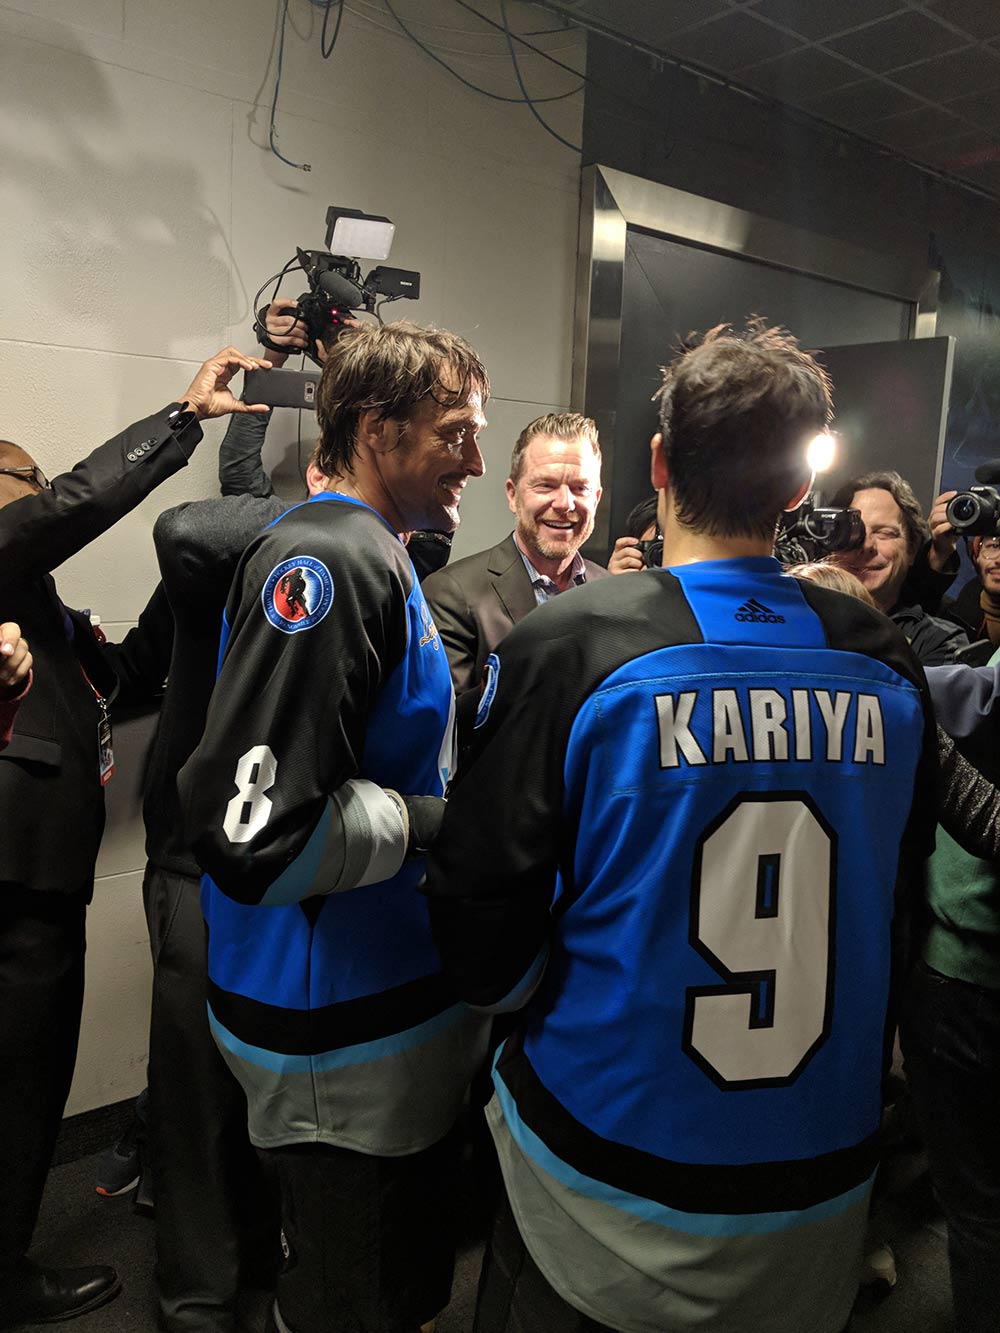 LeBrun: Paul Kariya welcomes hockey back into his life with Hall